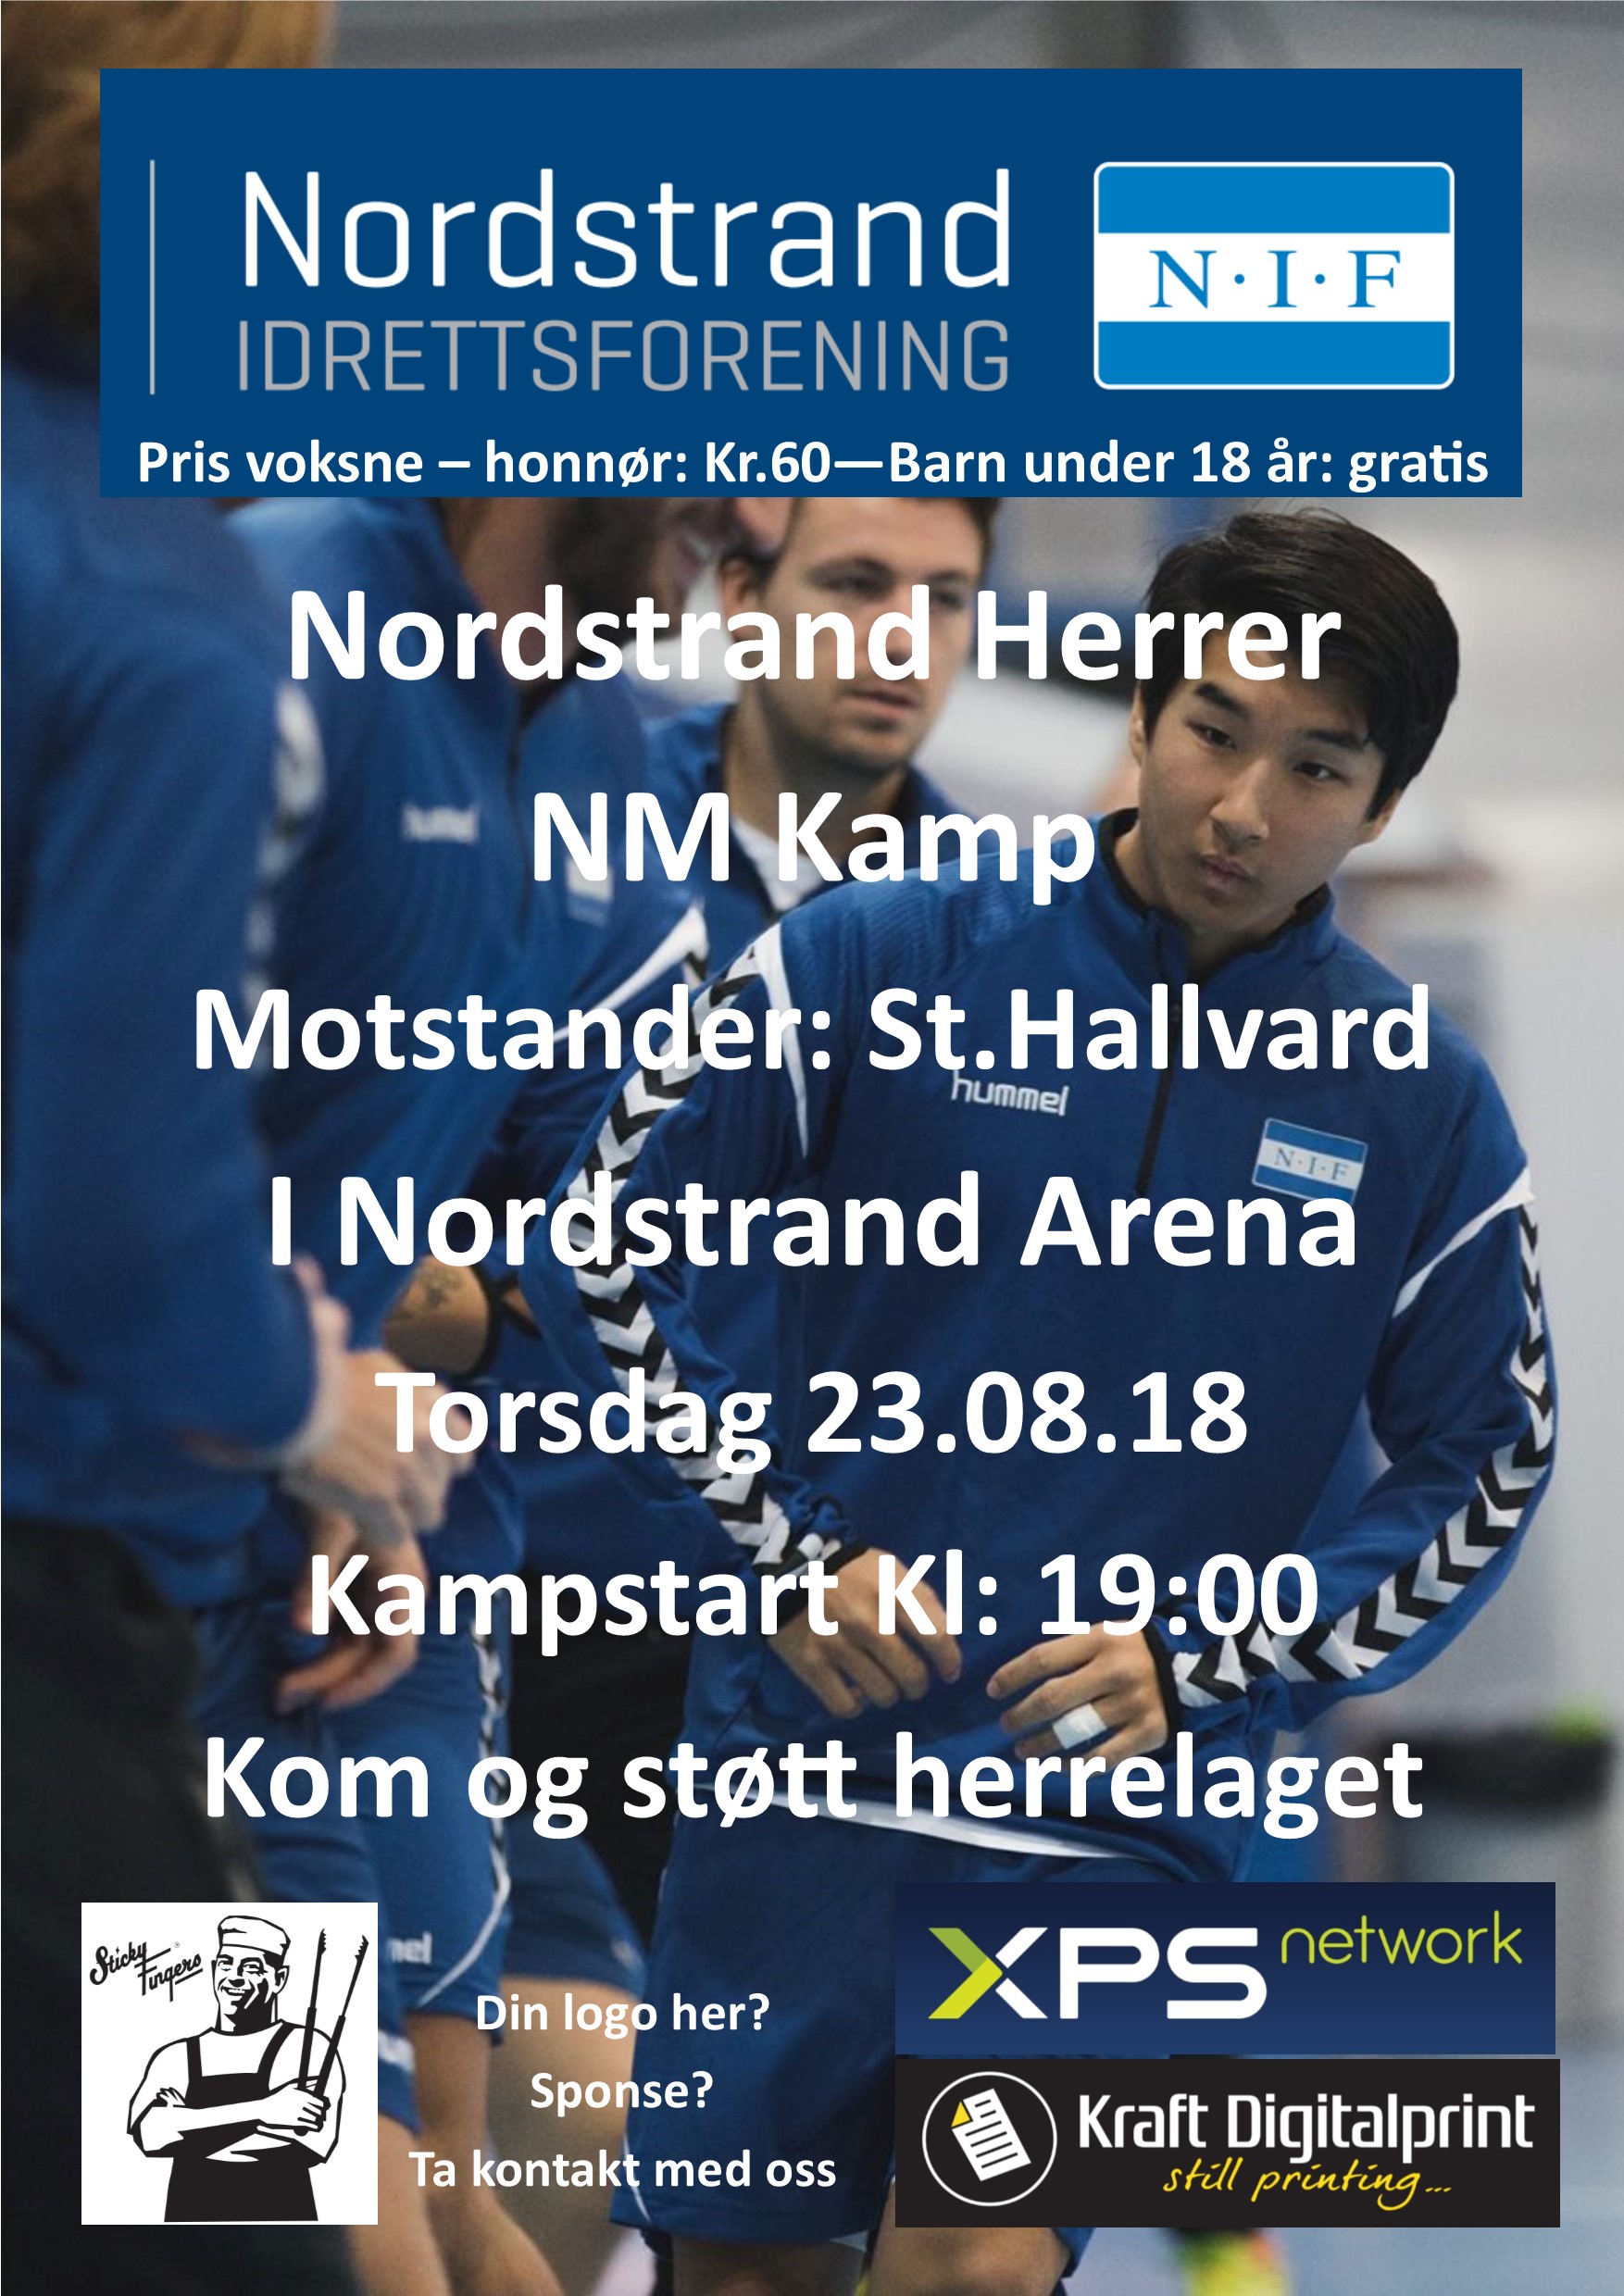 Herrelaget inviterer til NM Kamp i Nordstrand Arena